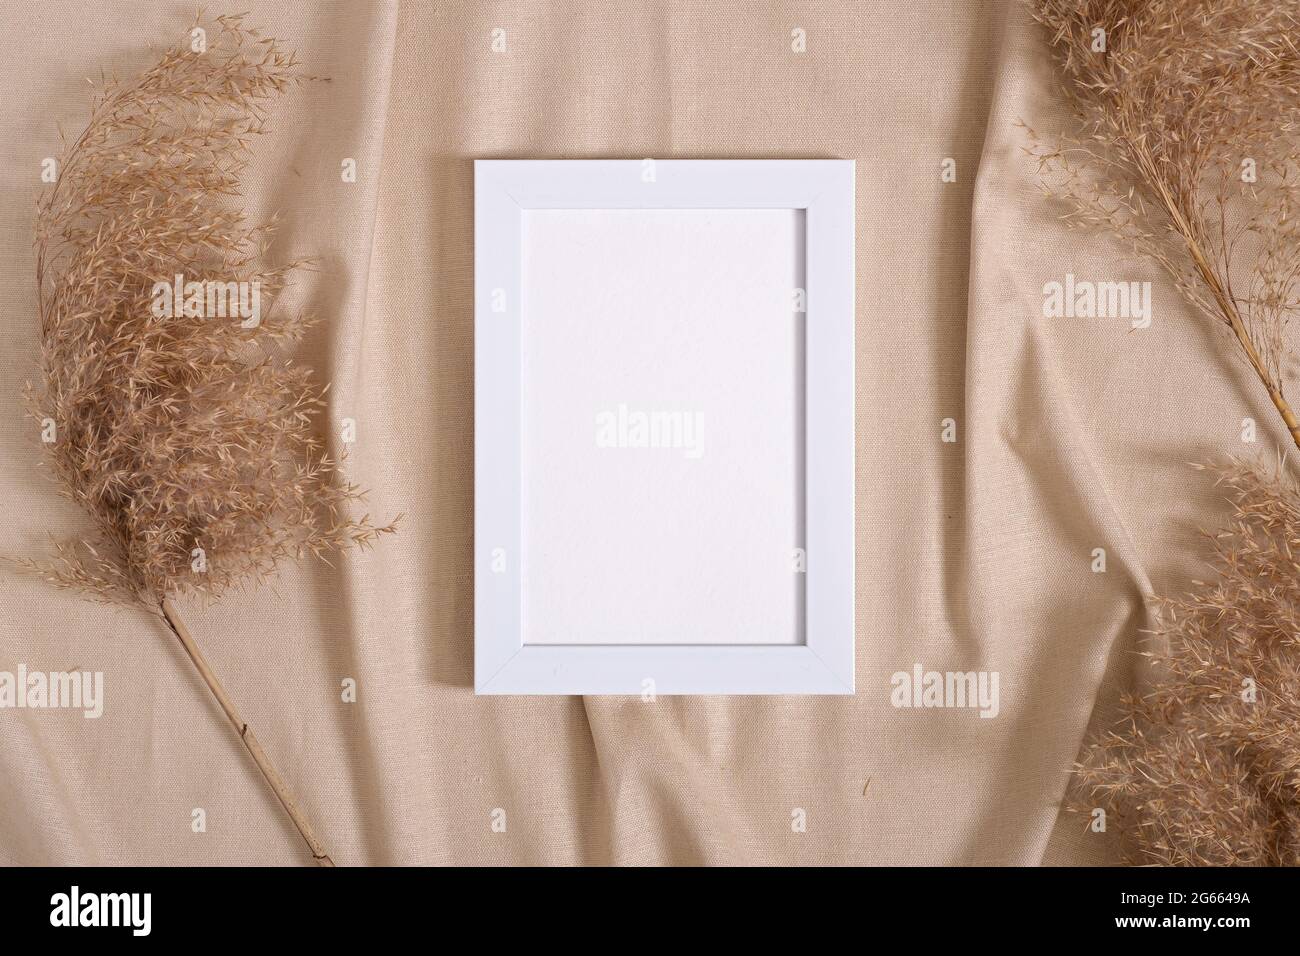 Cornice fotografica con mockup di carta vuota vicino alle pampas erba secca su tessuto di colore neutro beige Foto Stock